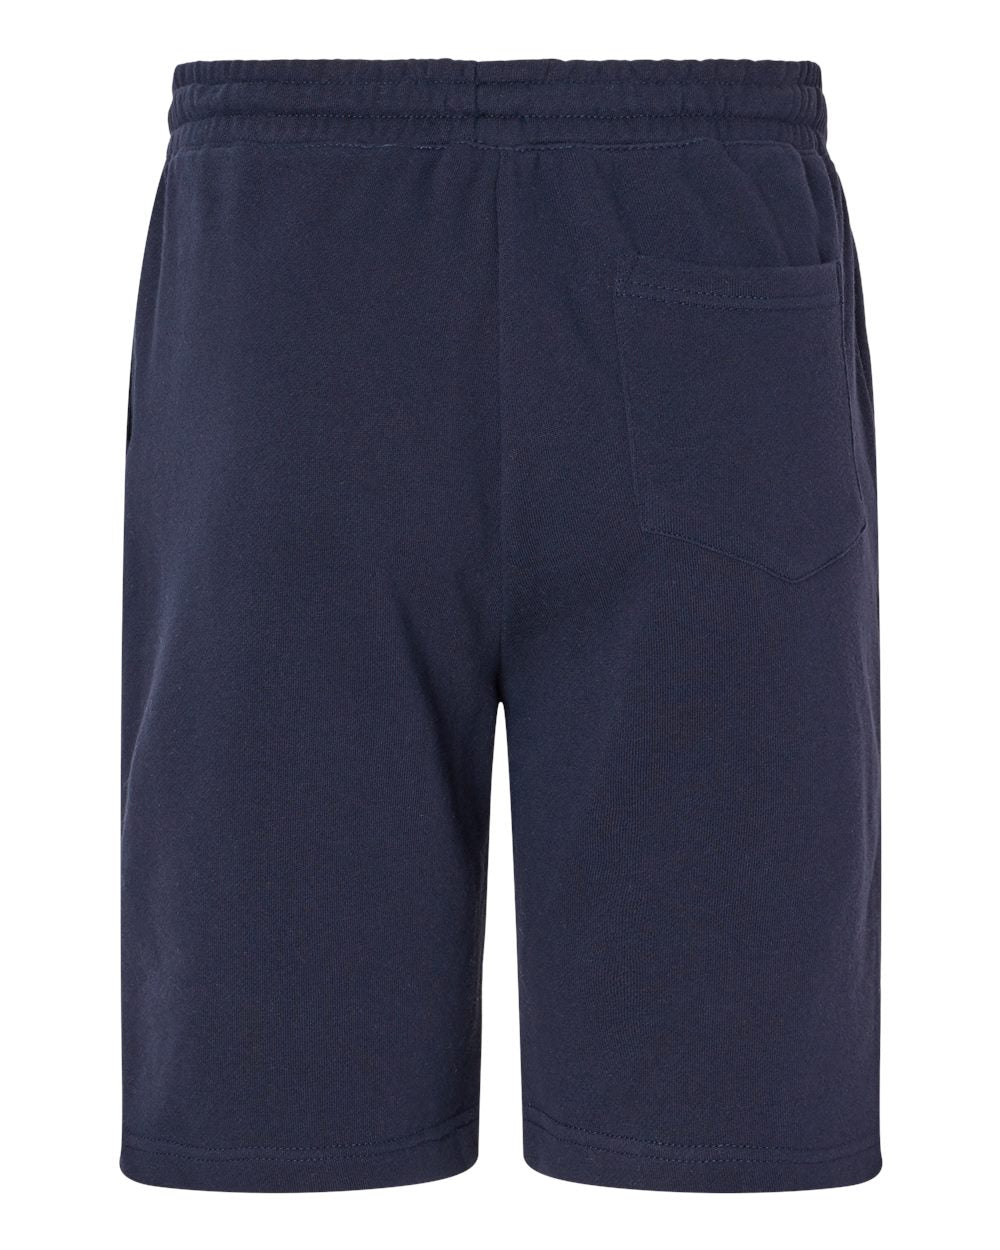 SOULSKY Men's Midweight Fleece Shorts (Navy Blue)